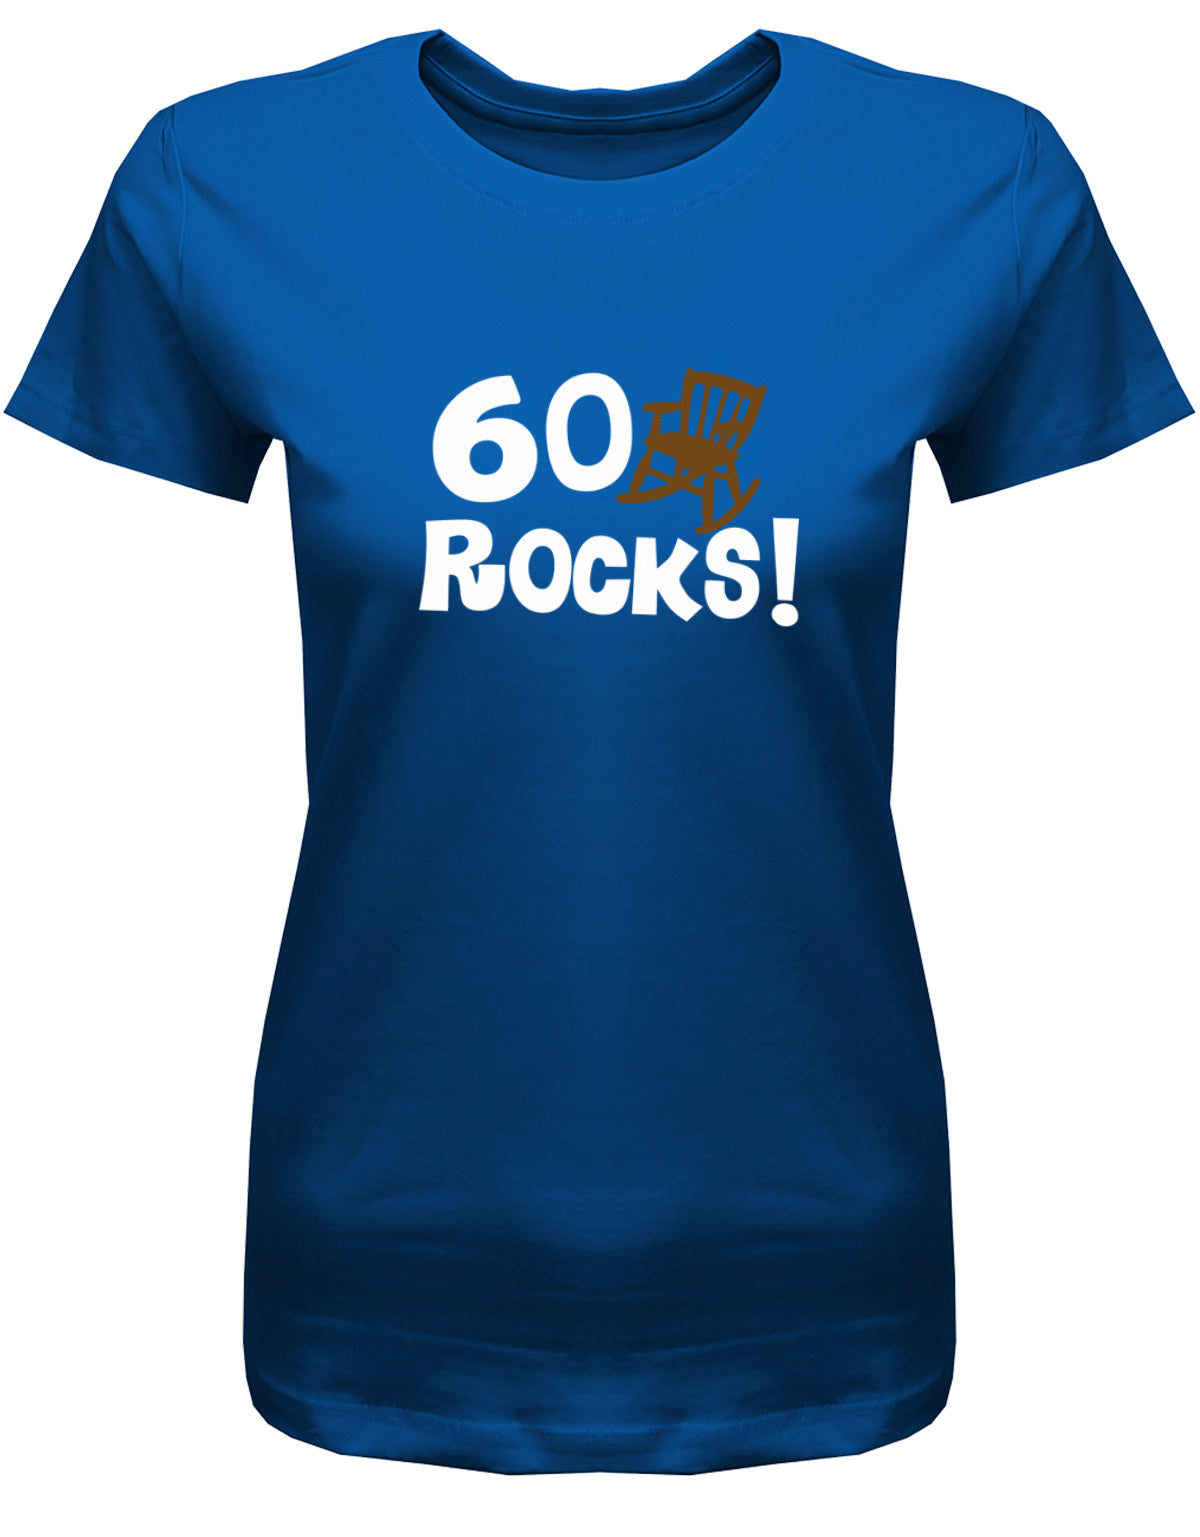 Lustiges T-Shirt zum 60 Geburtstag für die Frau Bedruckt mit 60 Rocks Schaukelstuhl. Royalblau